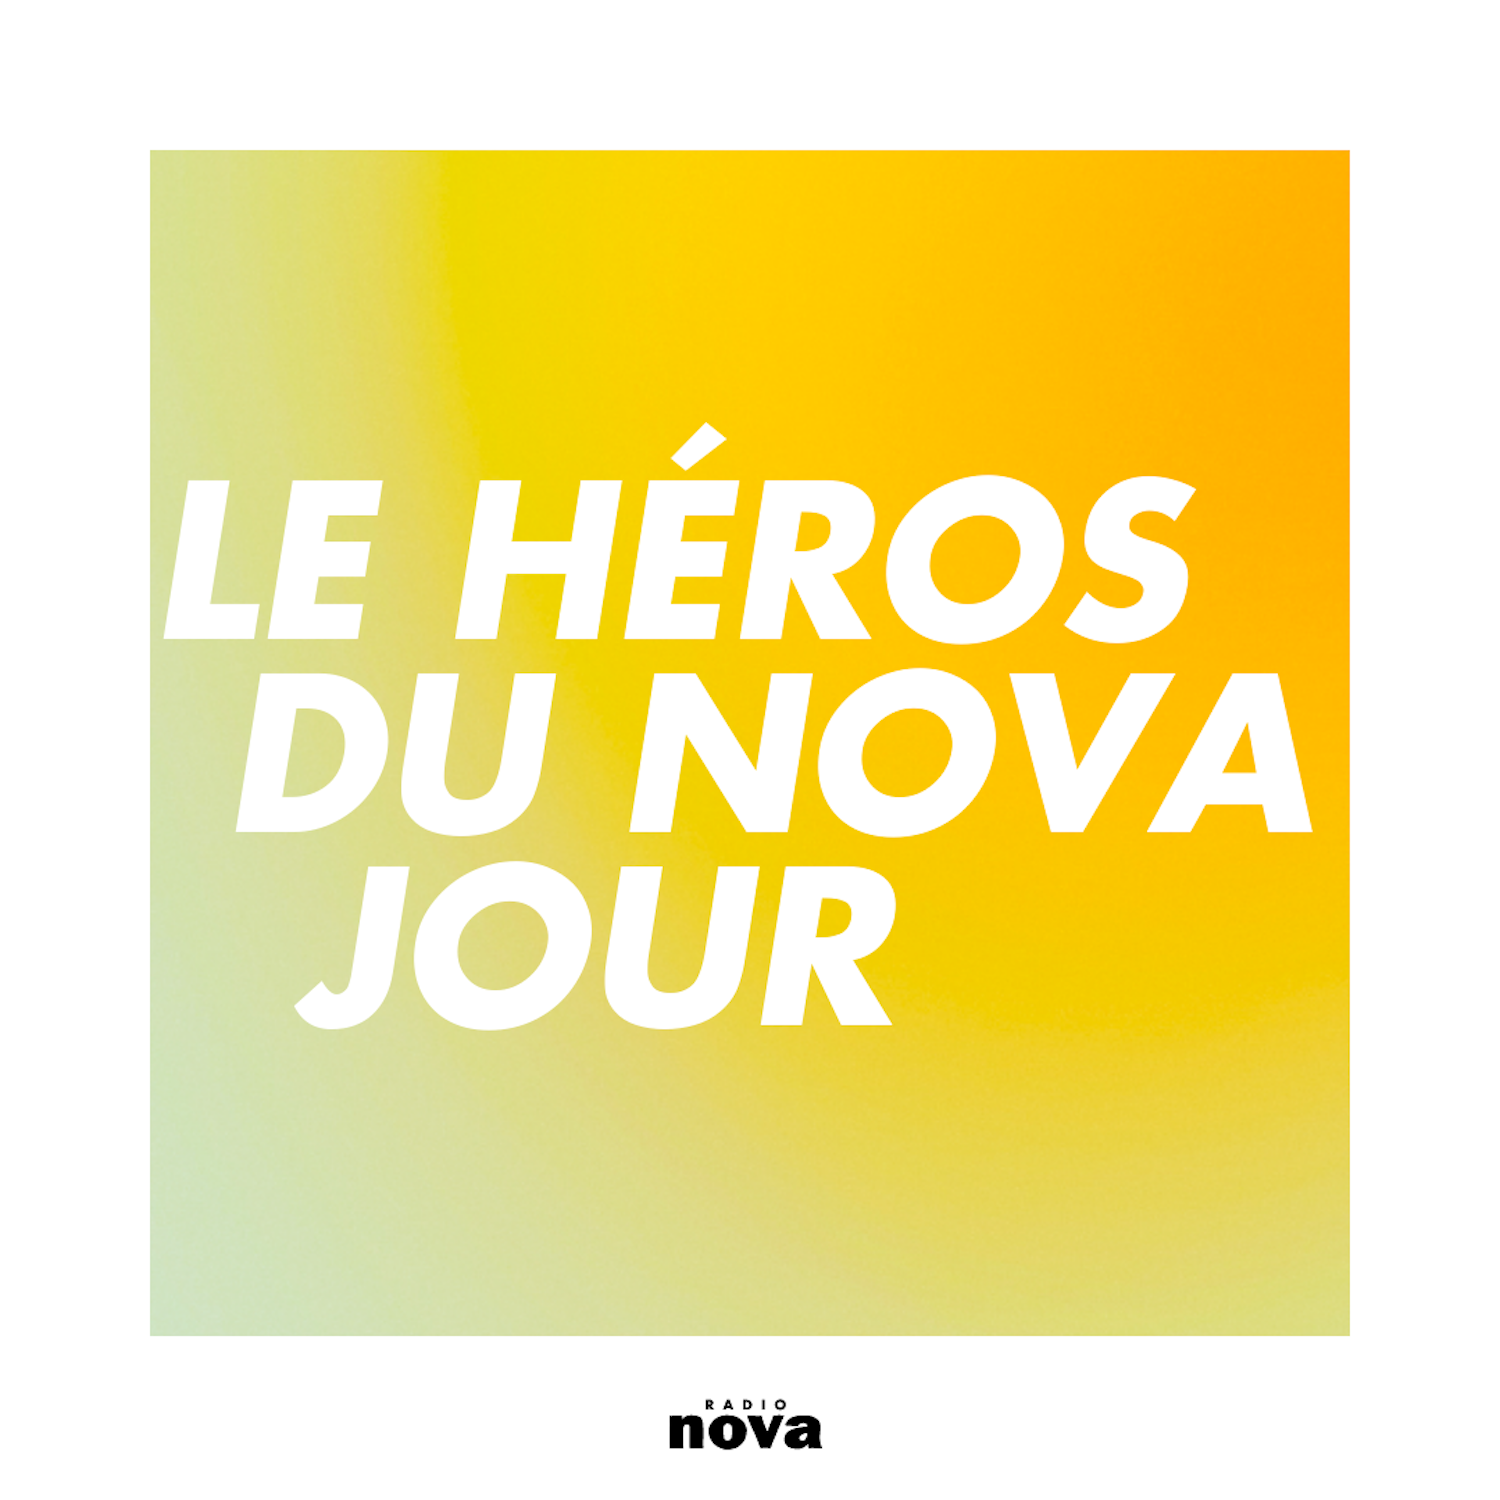 Le Héros du Nova jour image photo